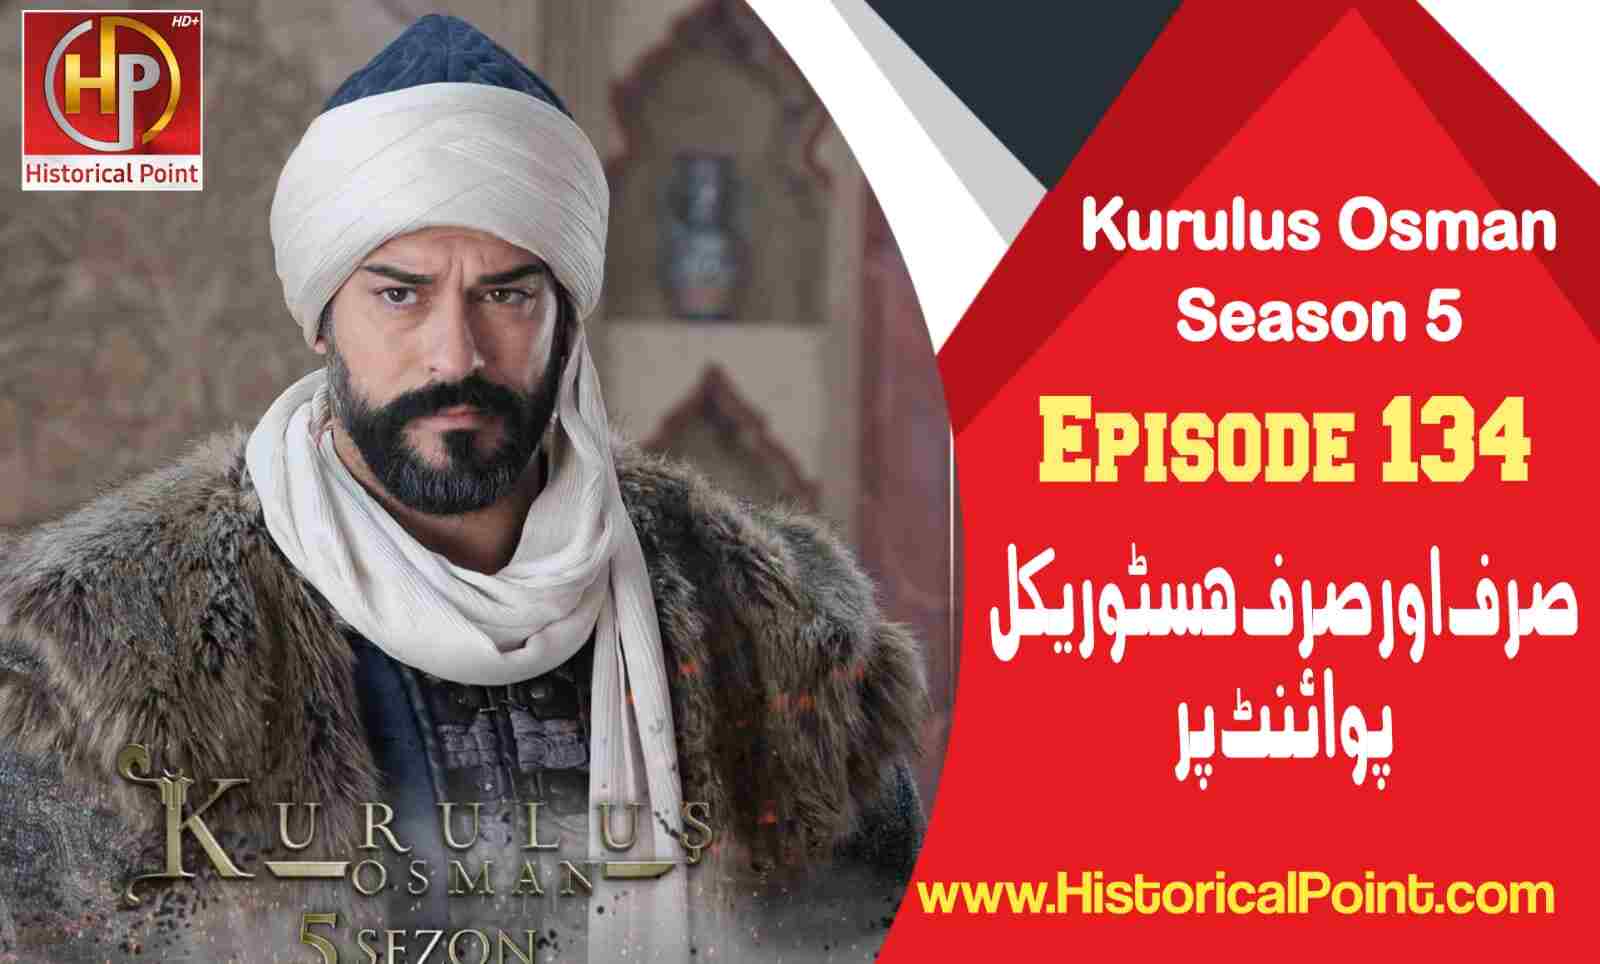 Watch Kurulus Osman Episode 134 in Urdu Subtitles Free - Historical Point